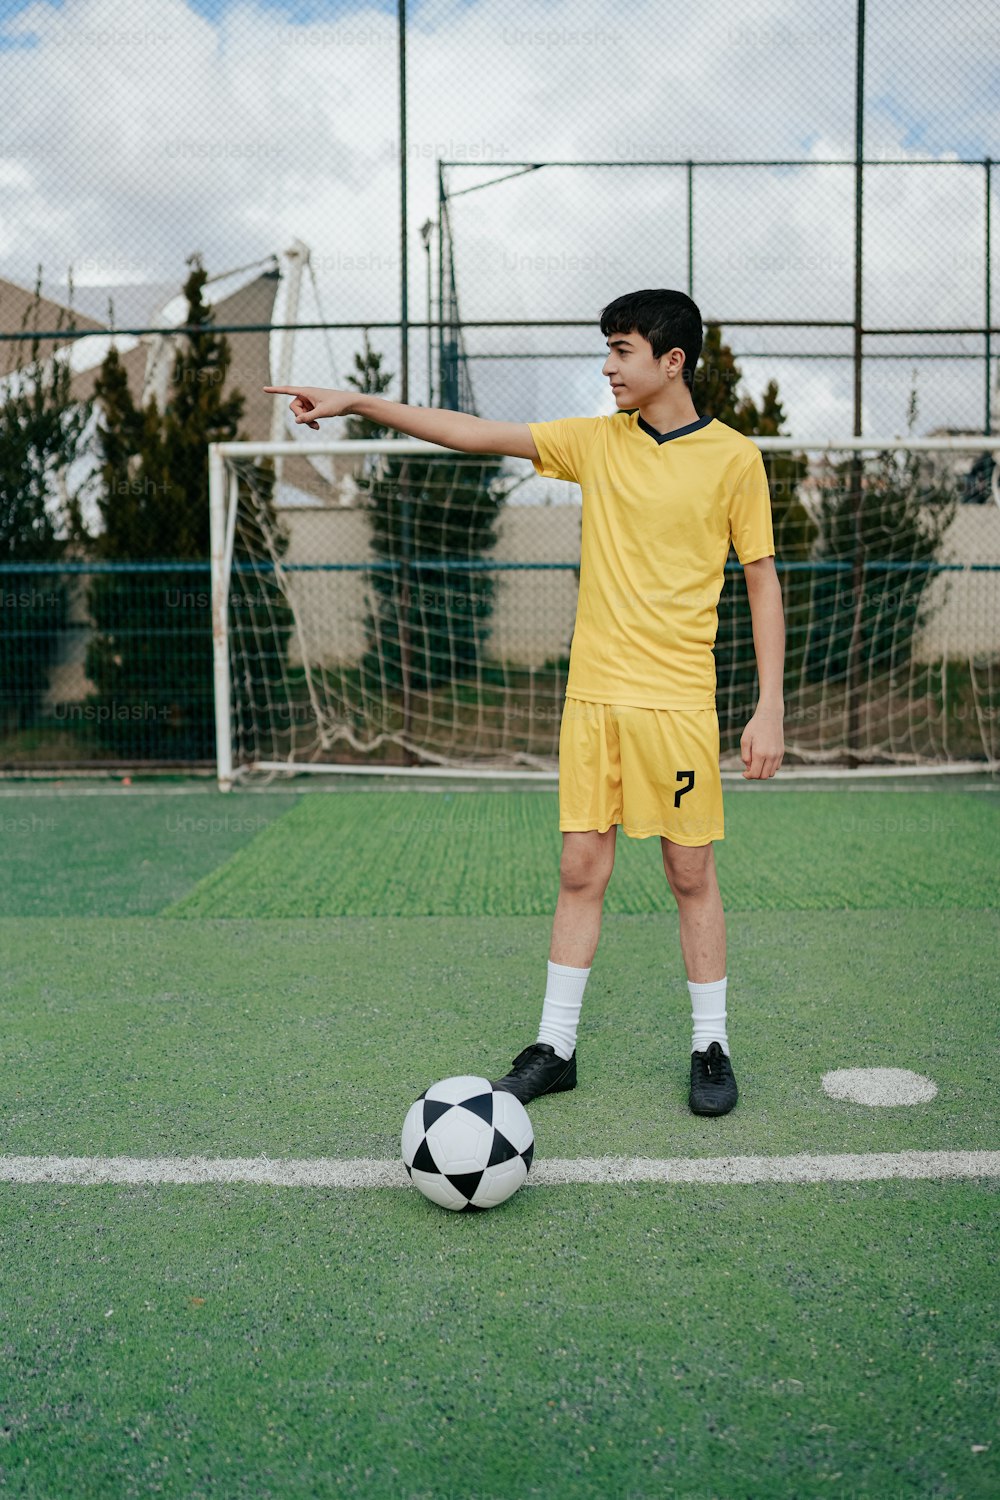 Ein junger Mann in gelber Uniform tritt gegen einen Fußball